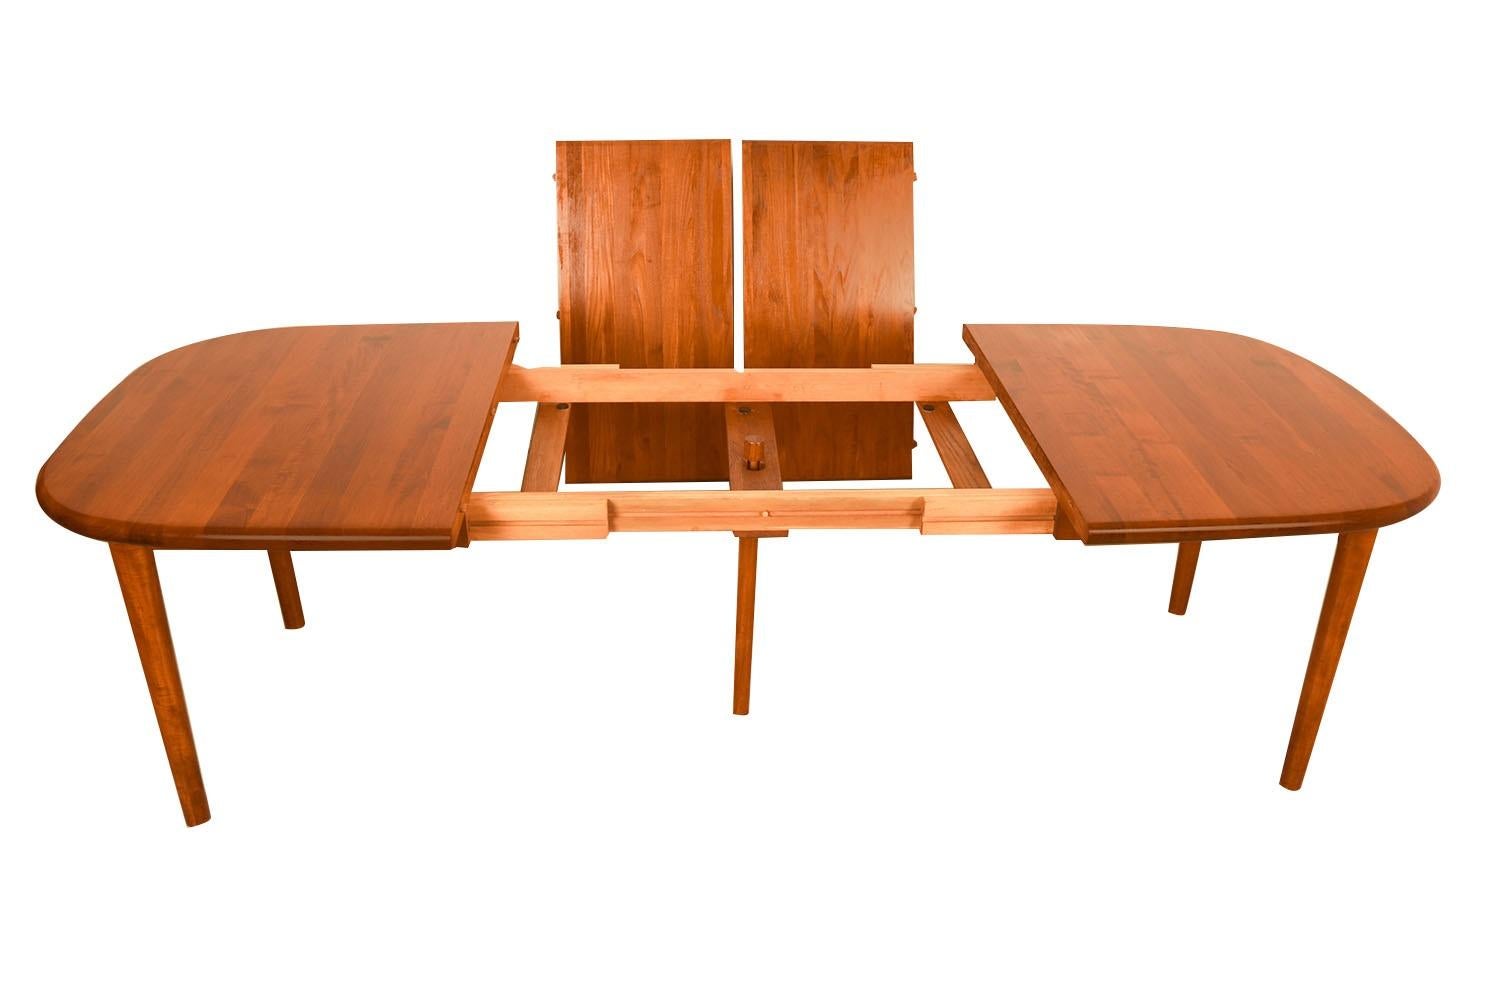 Magnifique table de salle à manger extensible en teck à coins arrondis, circa 1970. Elle se caractérise par un teck au grain riche et brillant et par des lignes douces et épurées, caractéristiques du design danois classique. Cette remarquable table